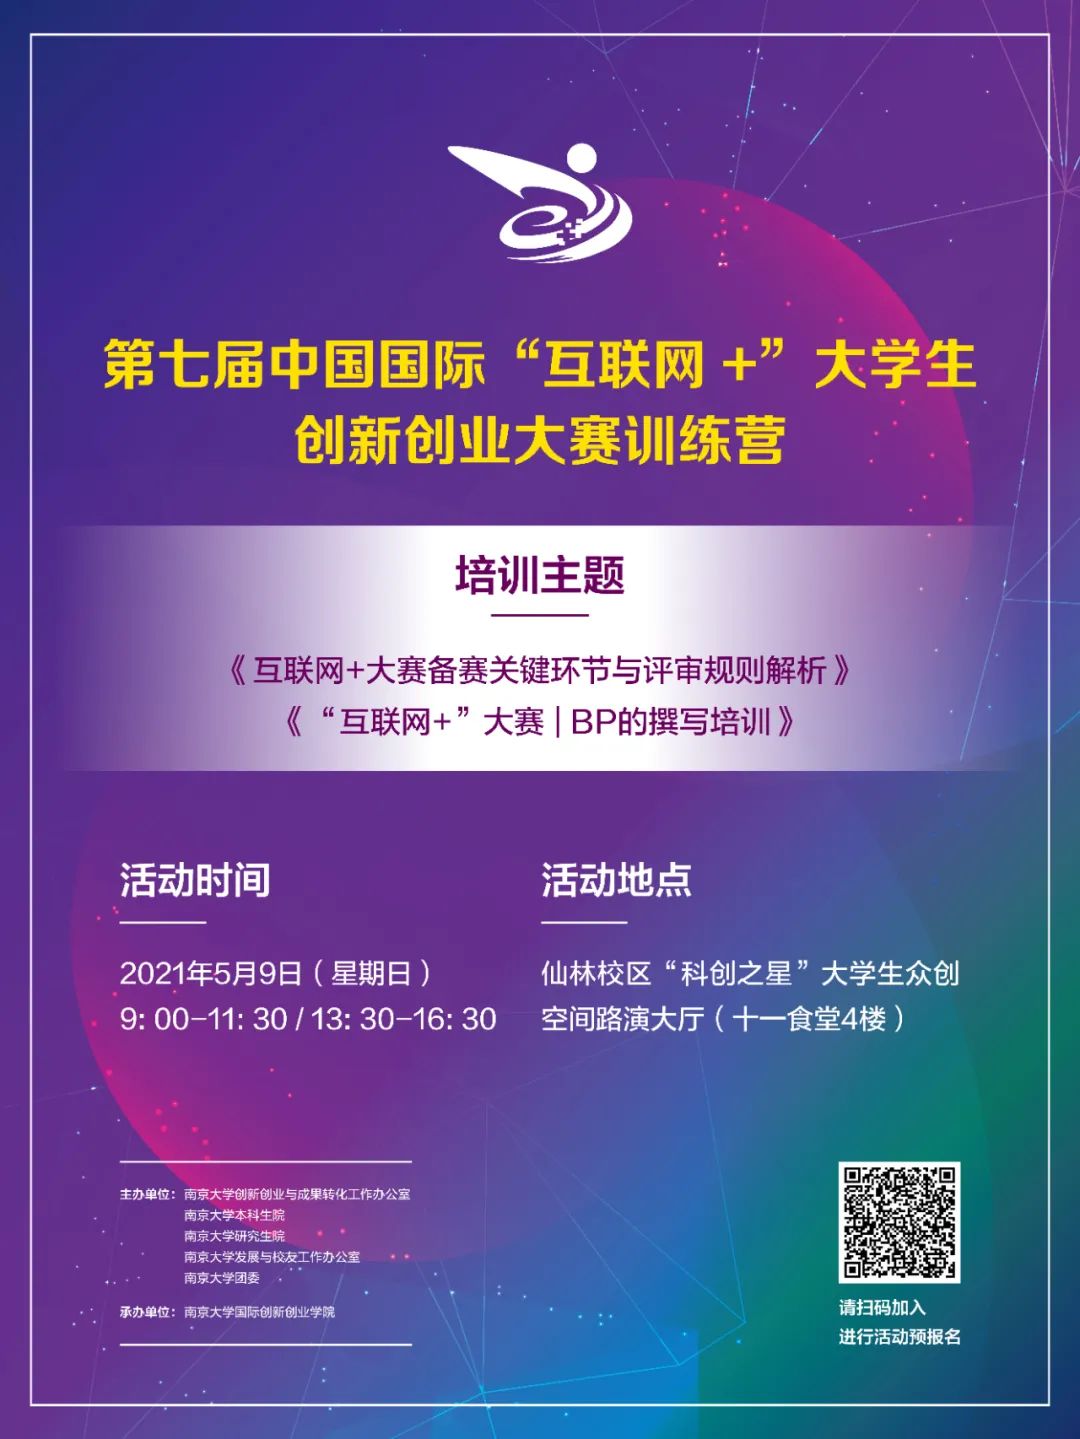 互联网大赛国际新闻(第五届中国国际互联网+大赛)